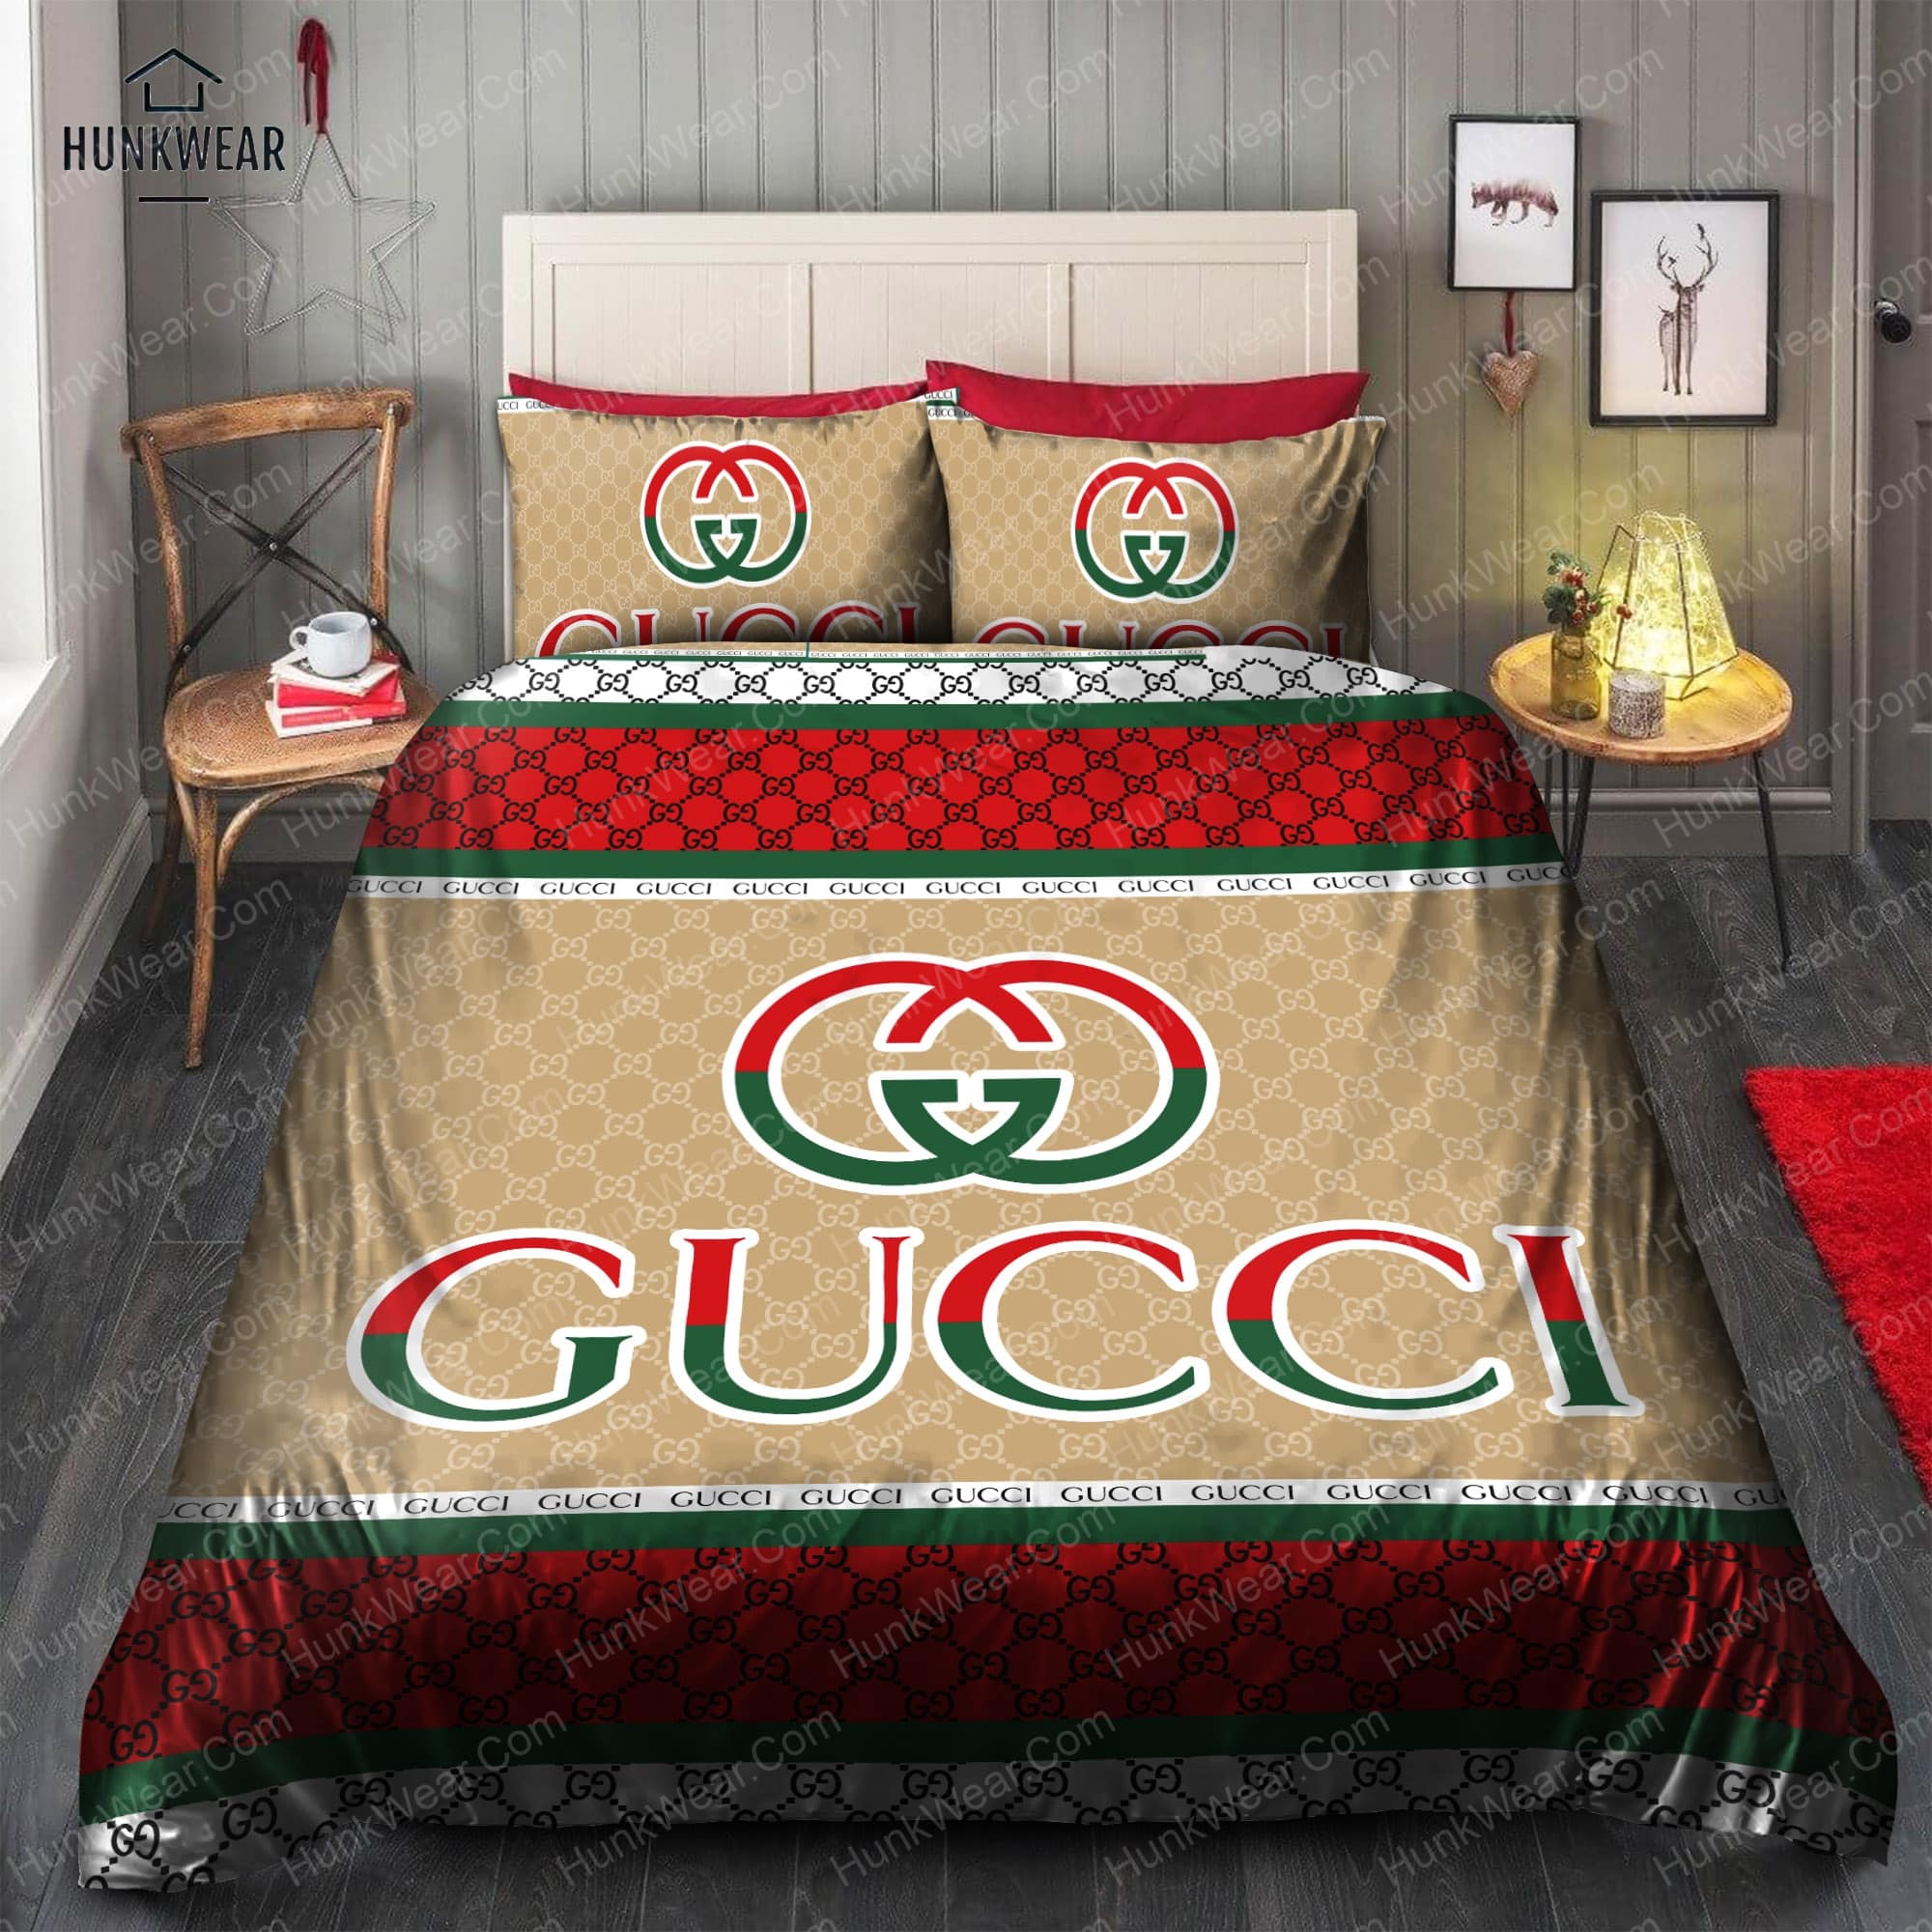 Gucci Bed Set Bedding Set HunkWear.Com